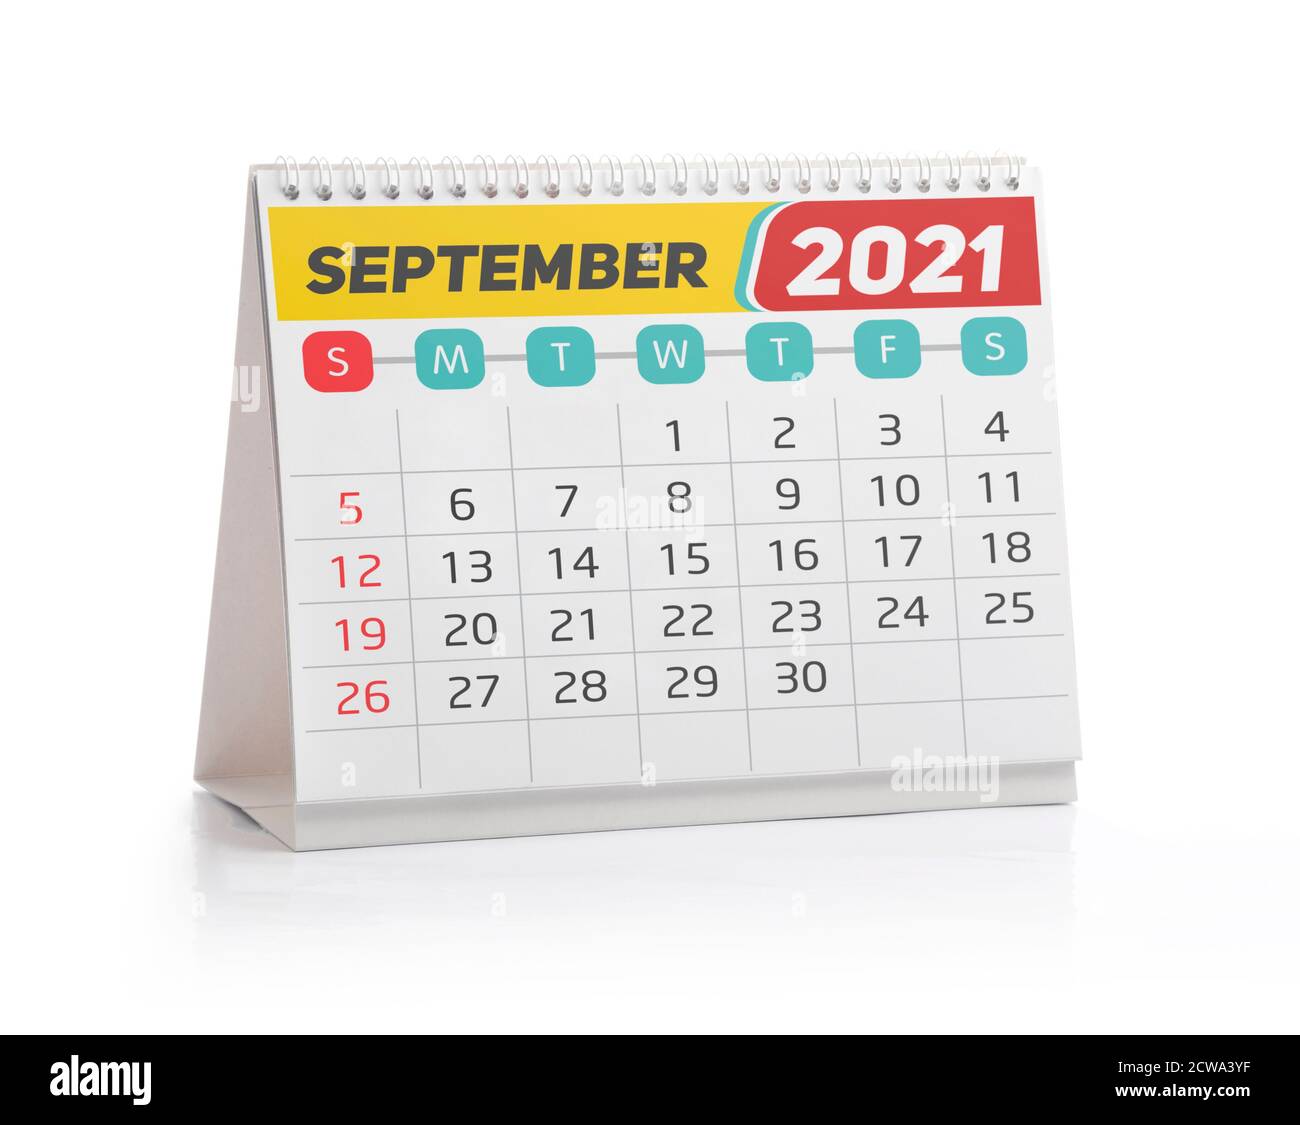 September 2021 Office Kalender isoliert auf Weiß Stockfoto